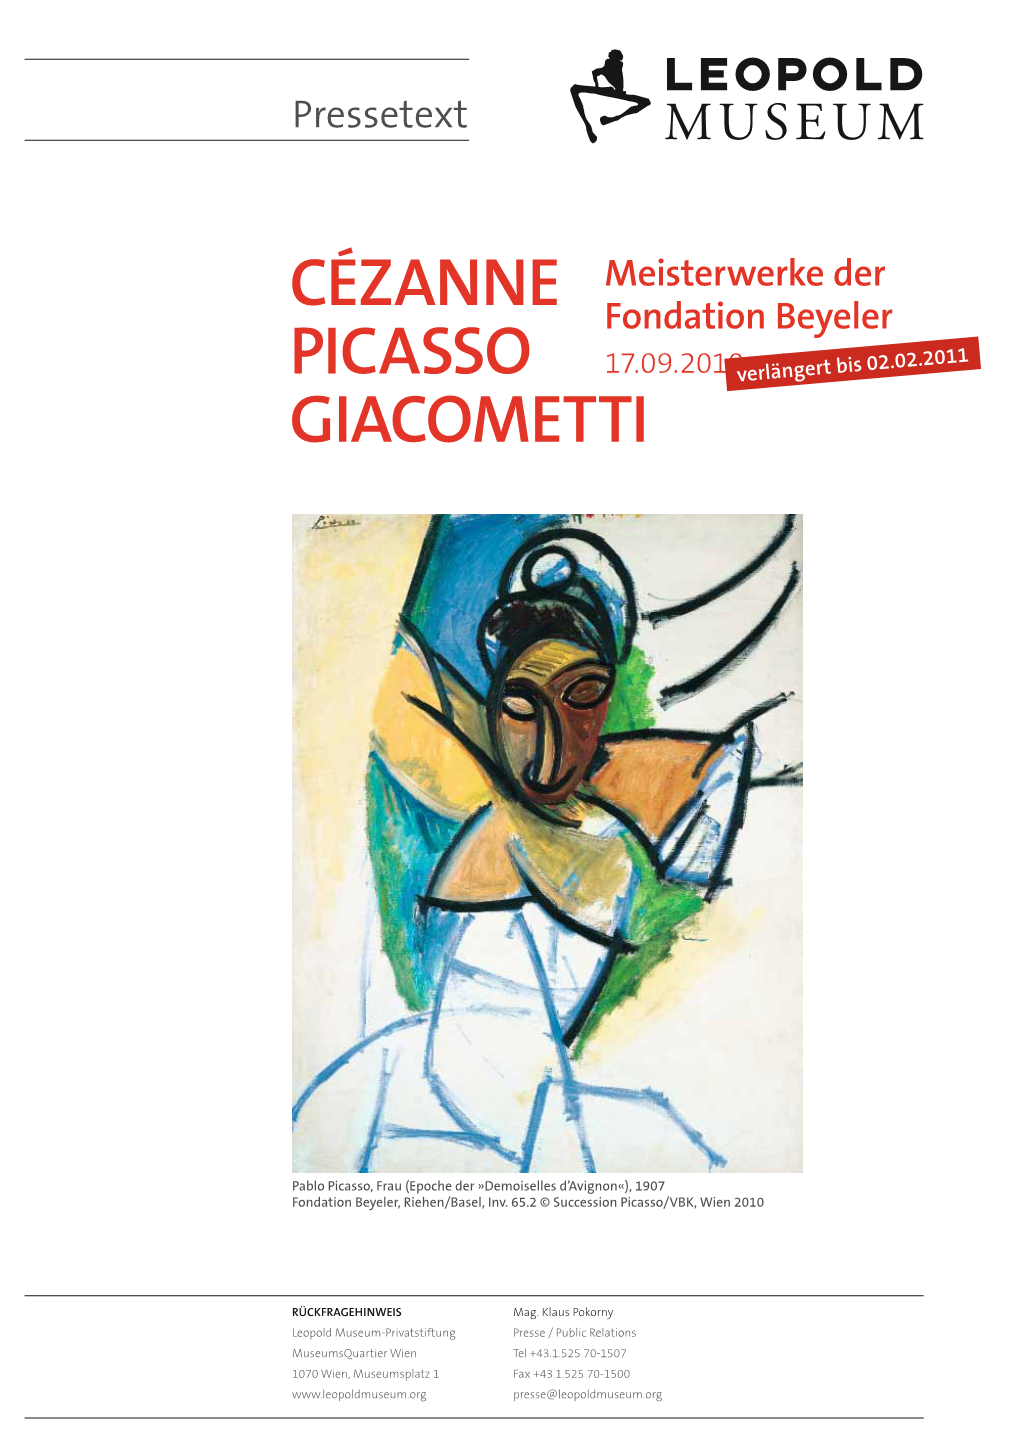 PRESSETEXT Cézanne – Picasso – Giacometti